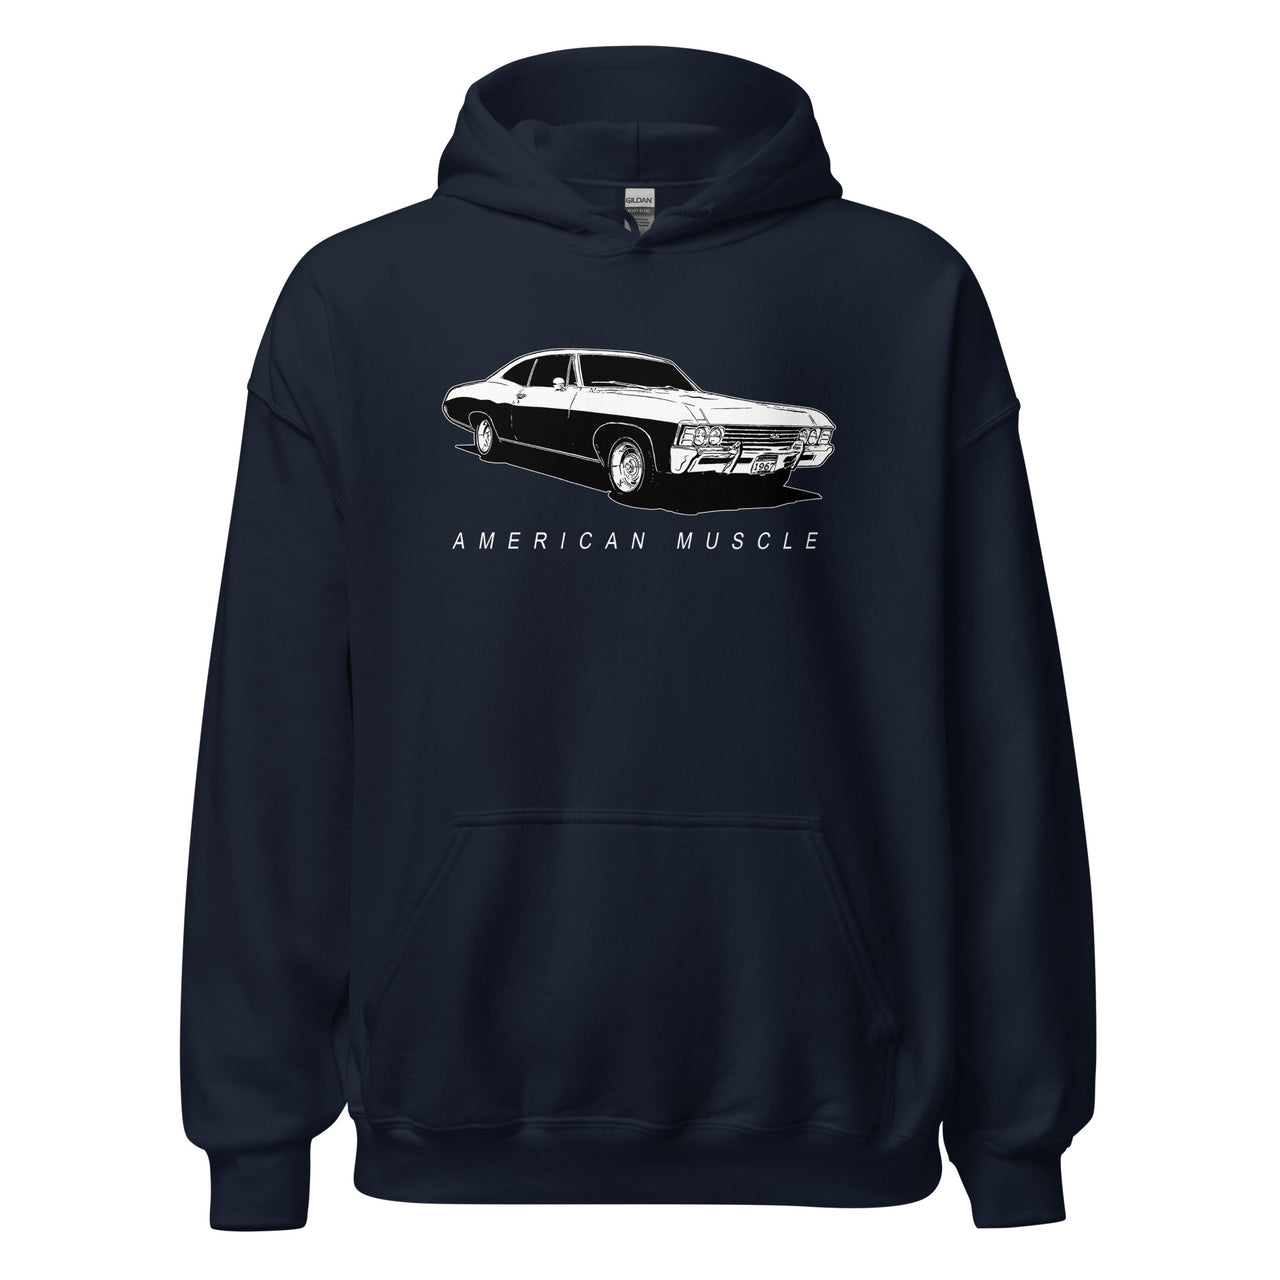 1967 Impala Hoodie American Muscle Car Sweatshirt in navy